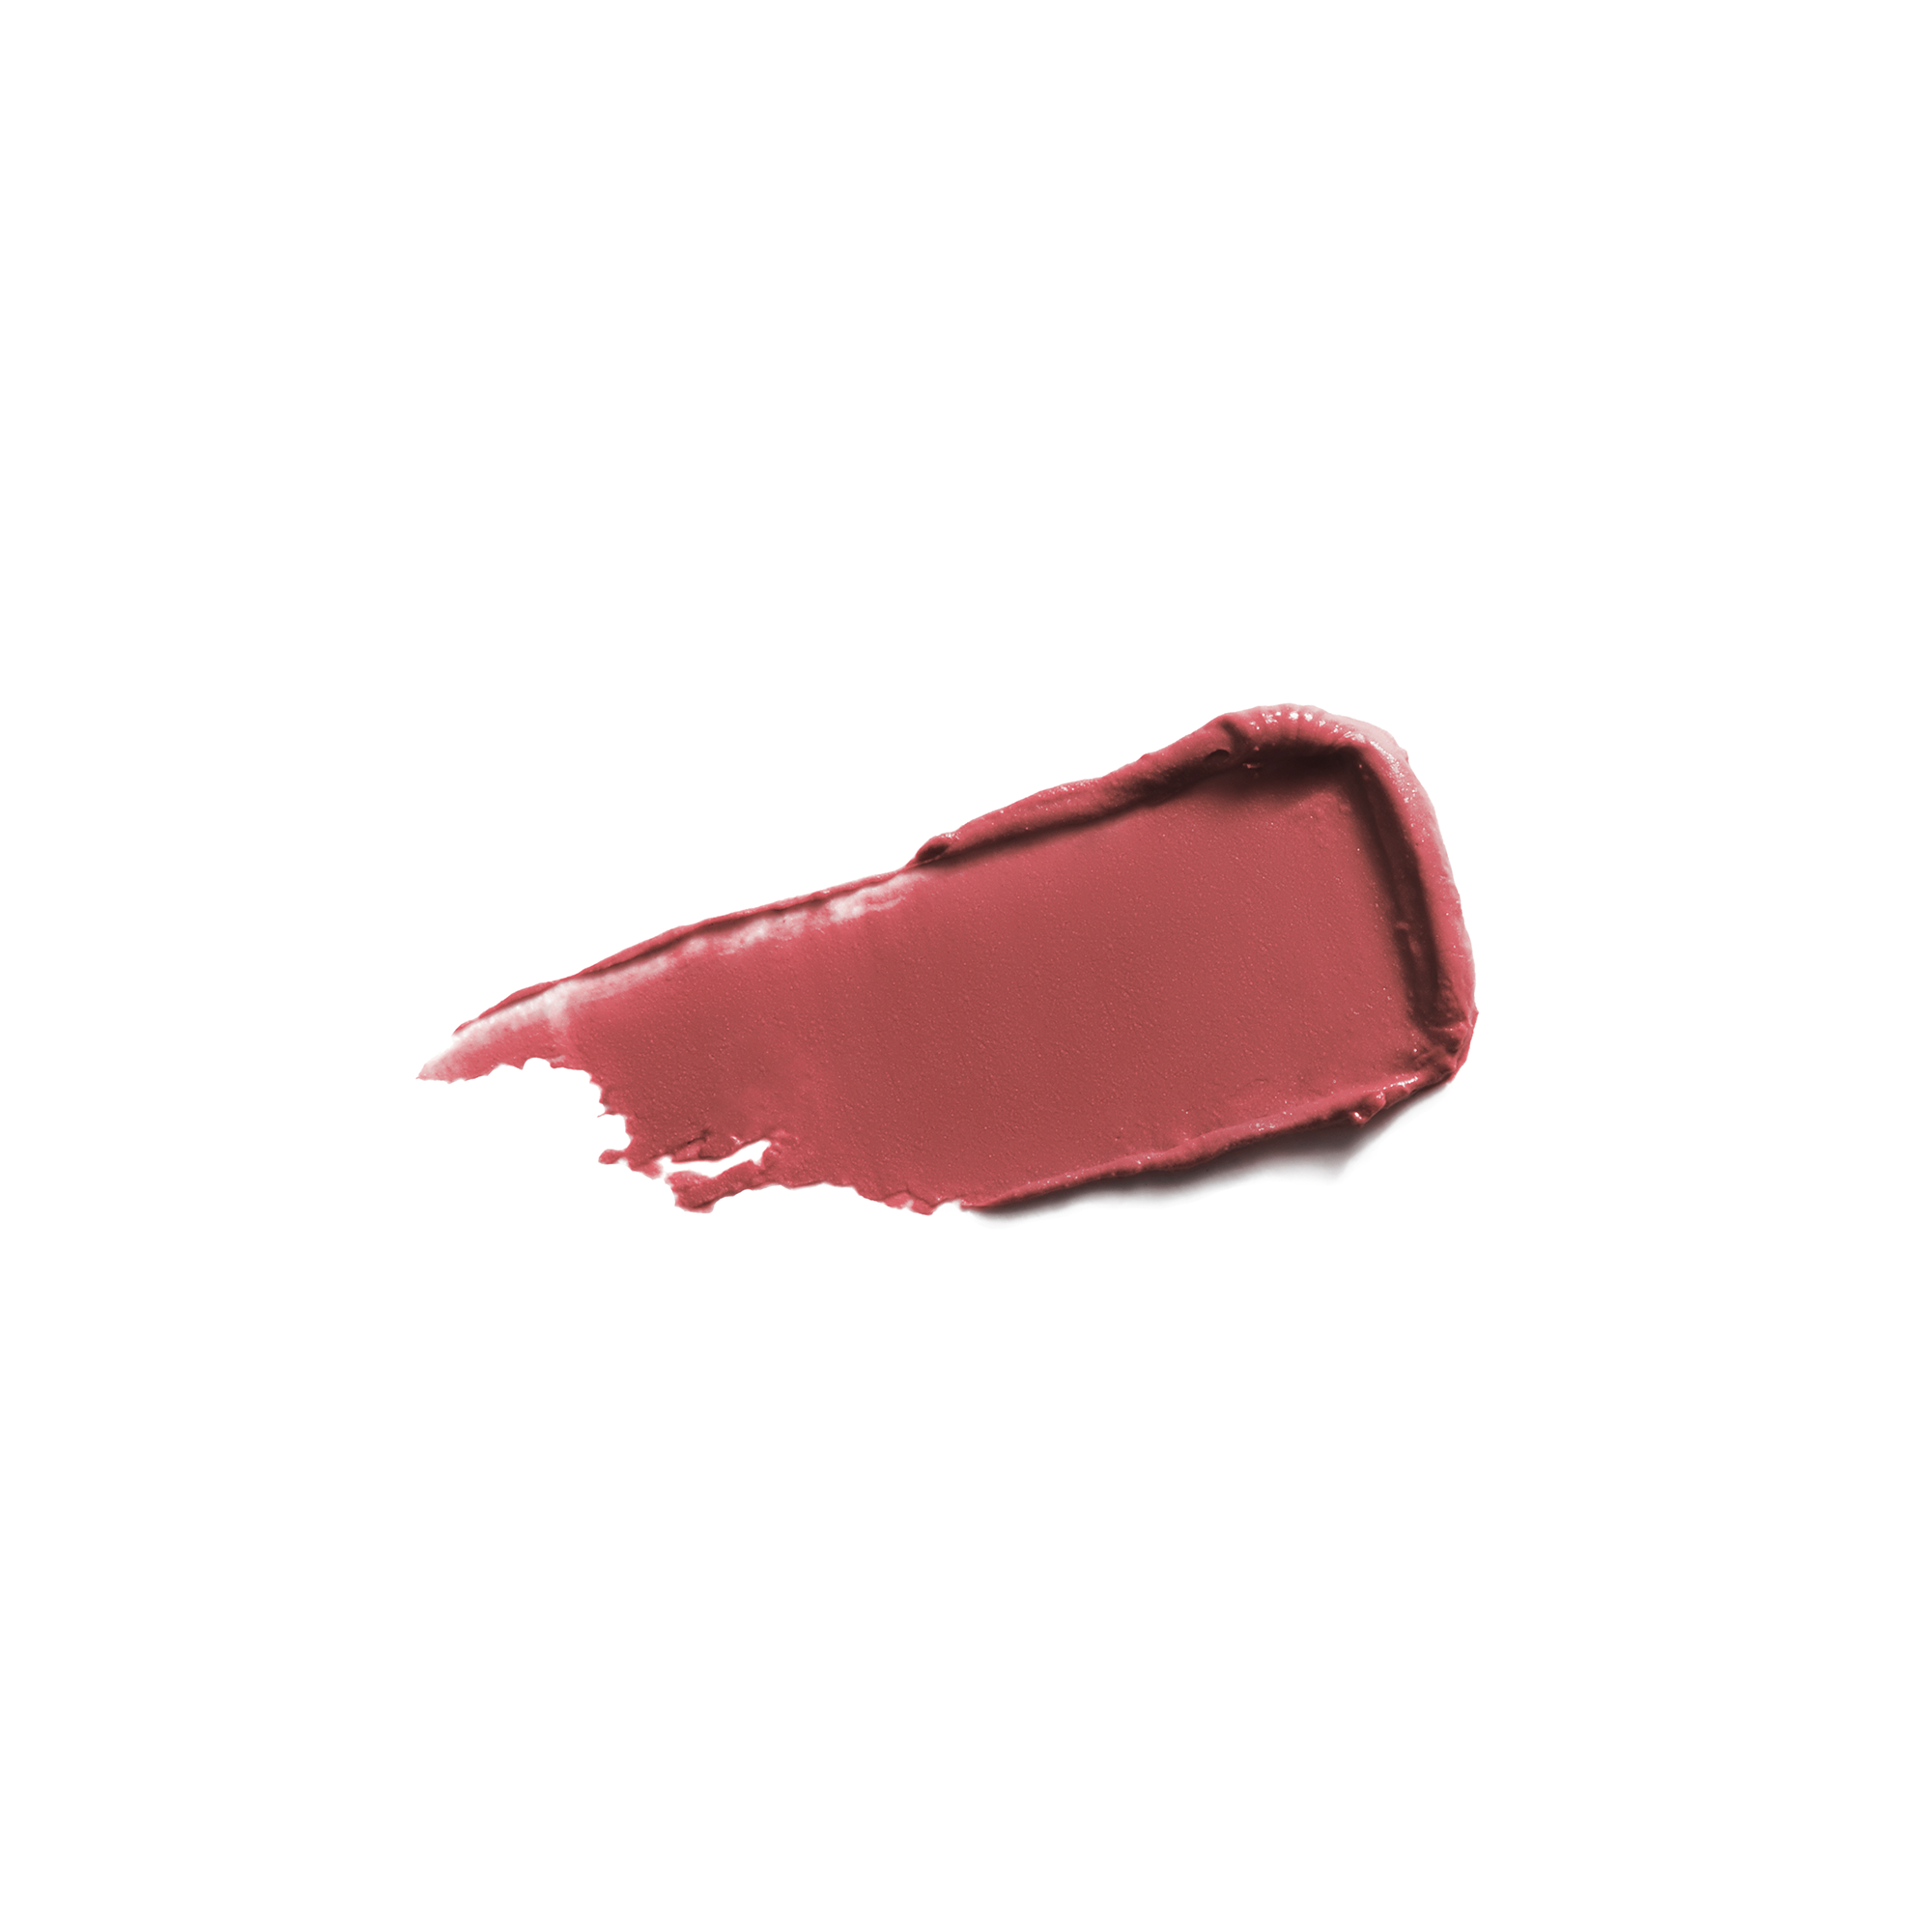 De verzorgende Bio Lipsticks van Couleur Caramel beschermen, verzachten en houden lang.